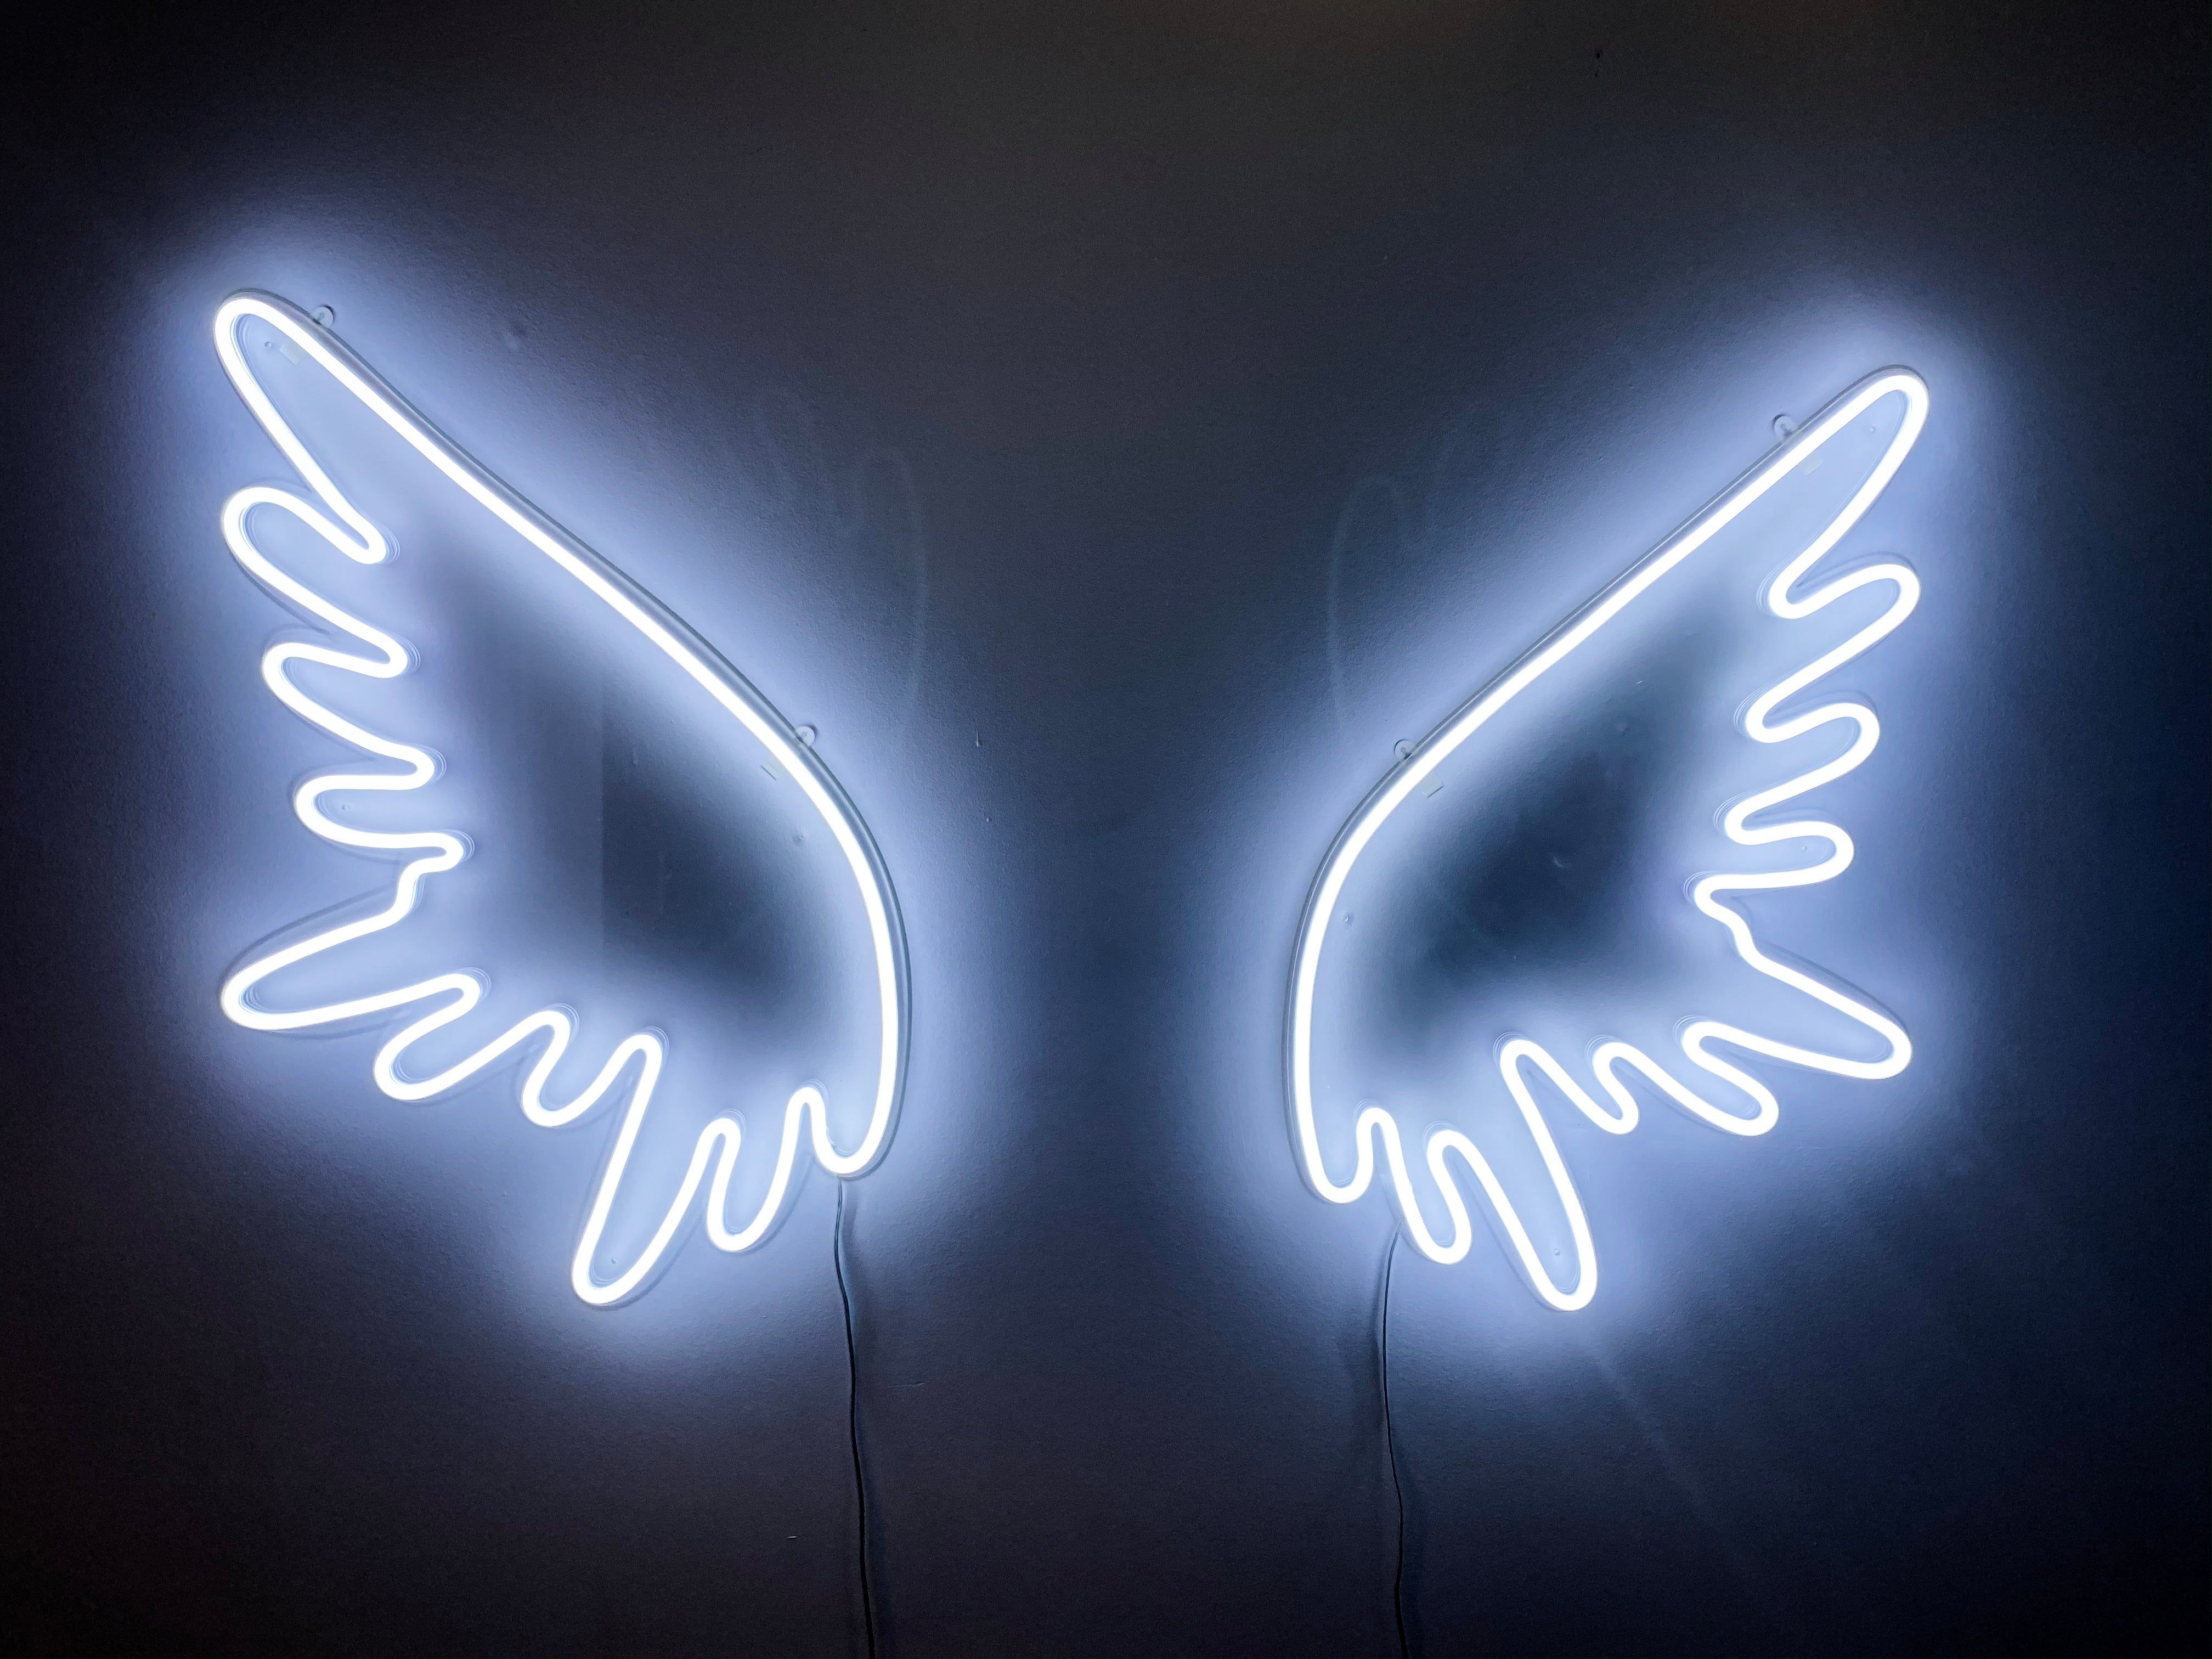 Neon Angel Wings or rent